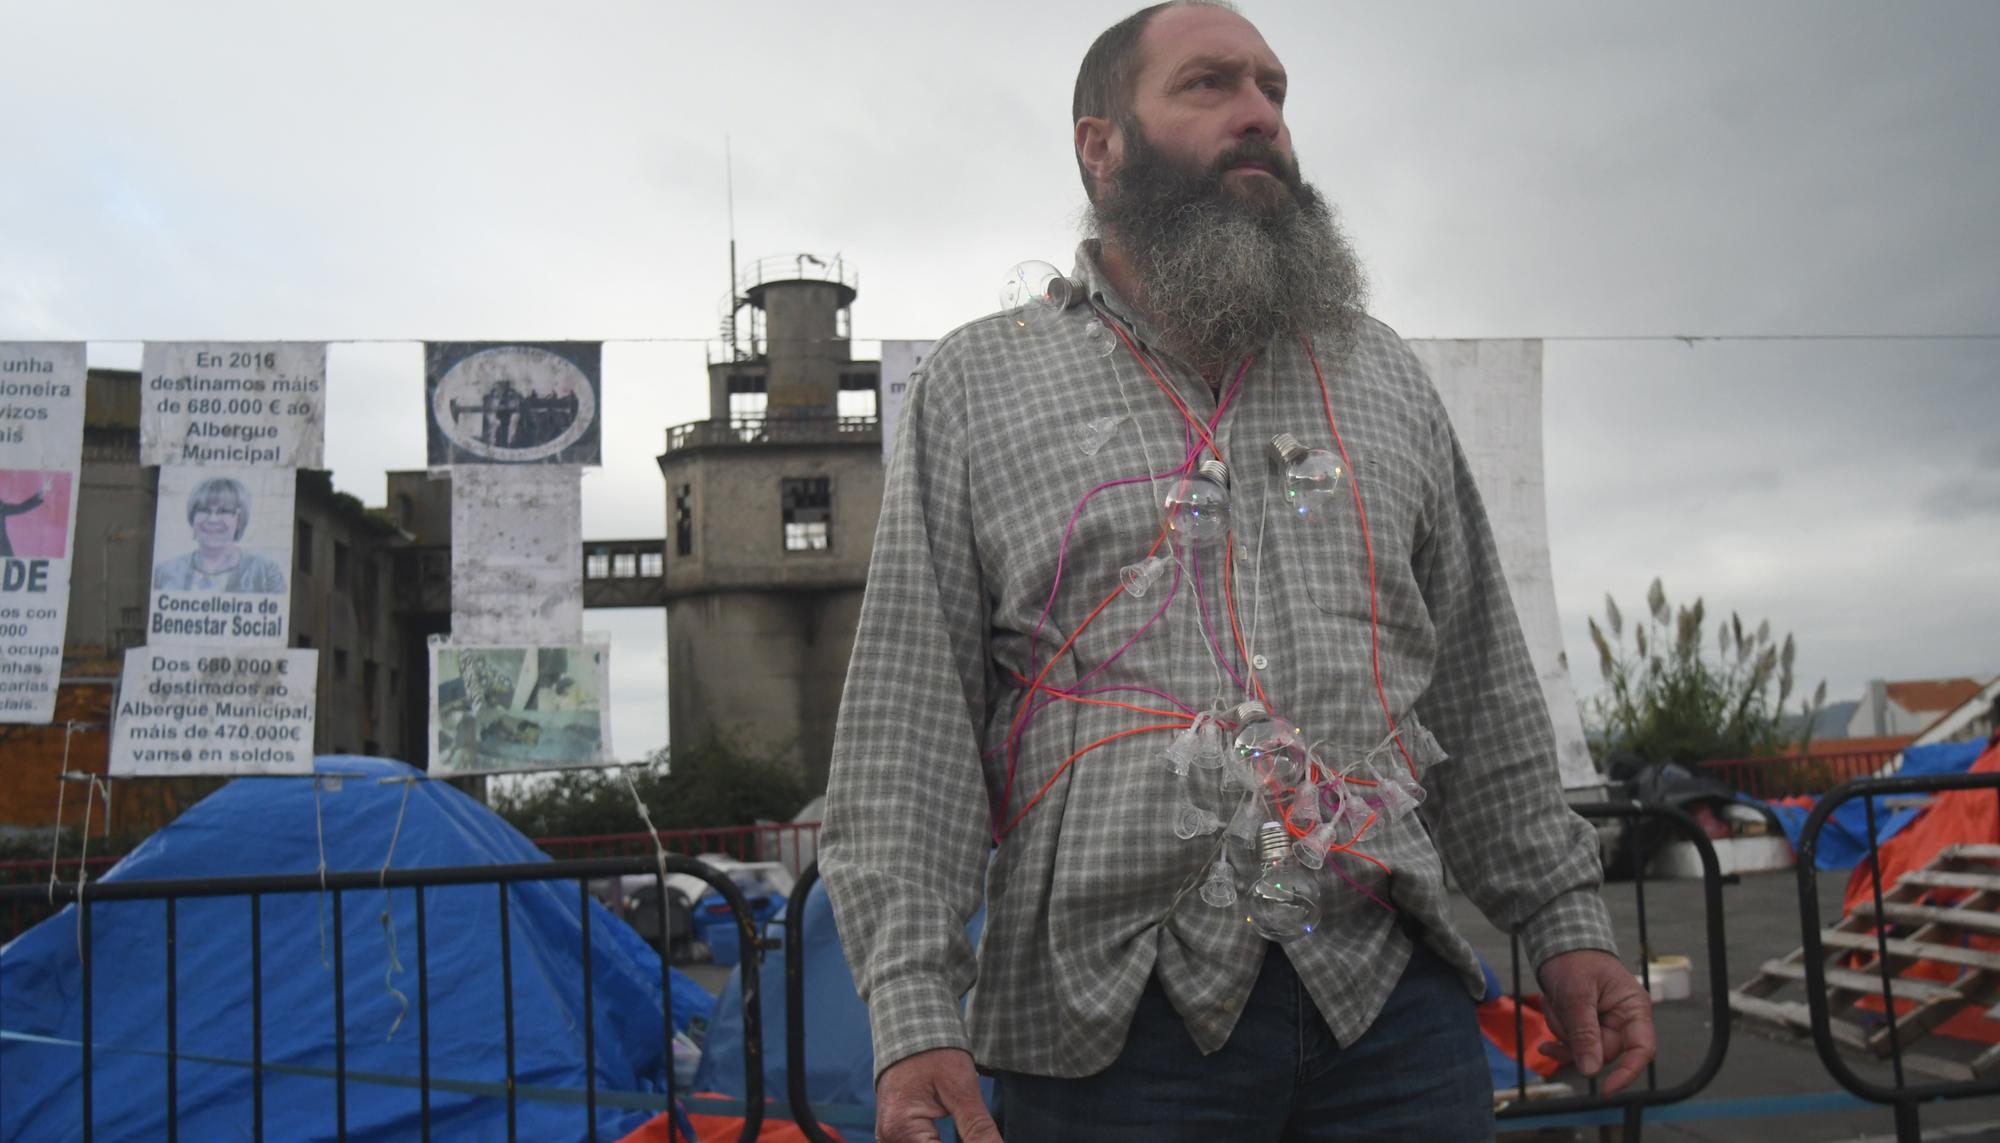 Juan Miguel Carollo, membro e organizador da acampada protesta no Concello de Vigo